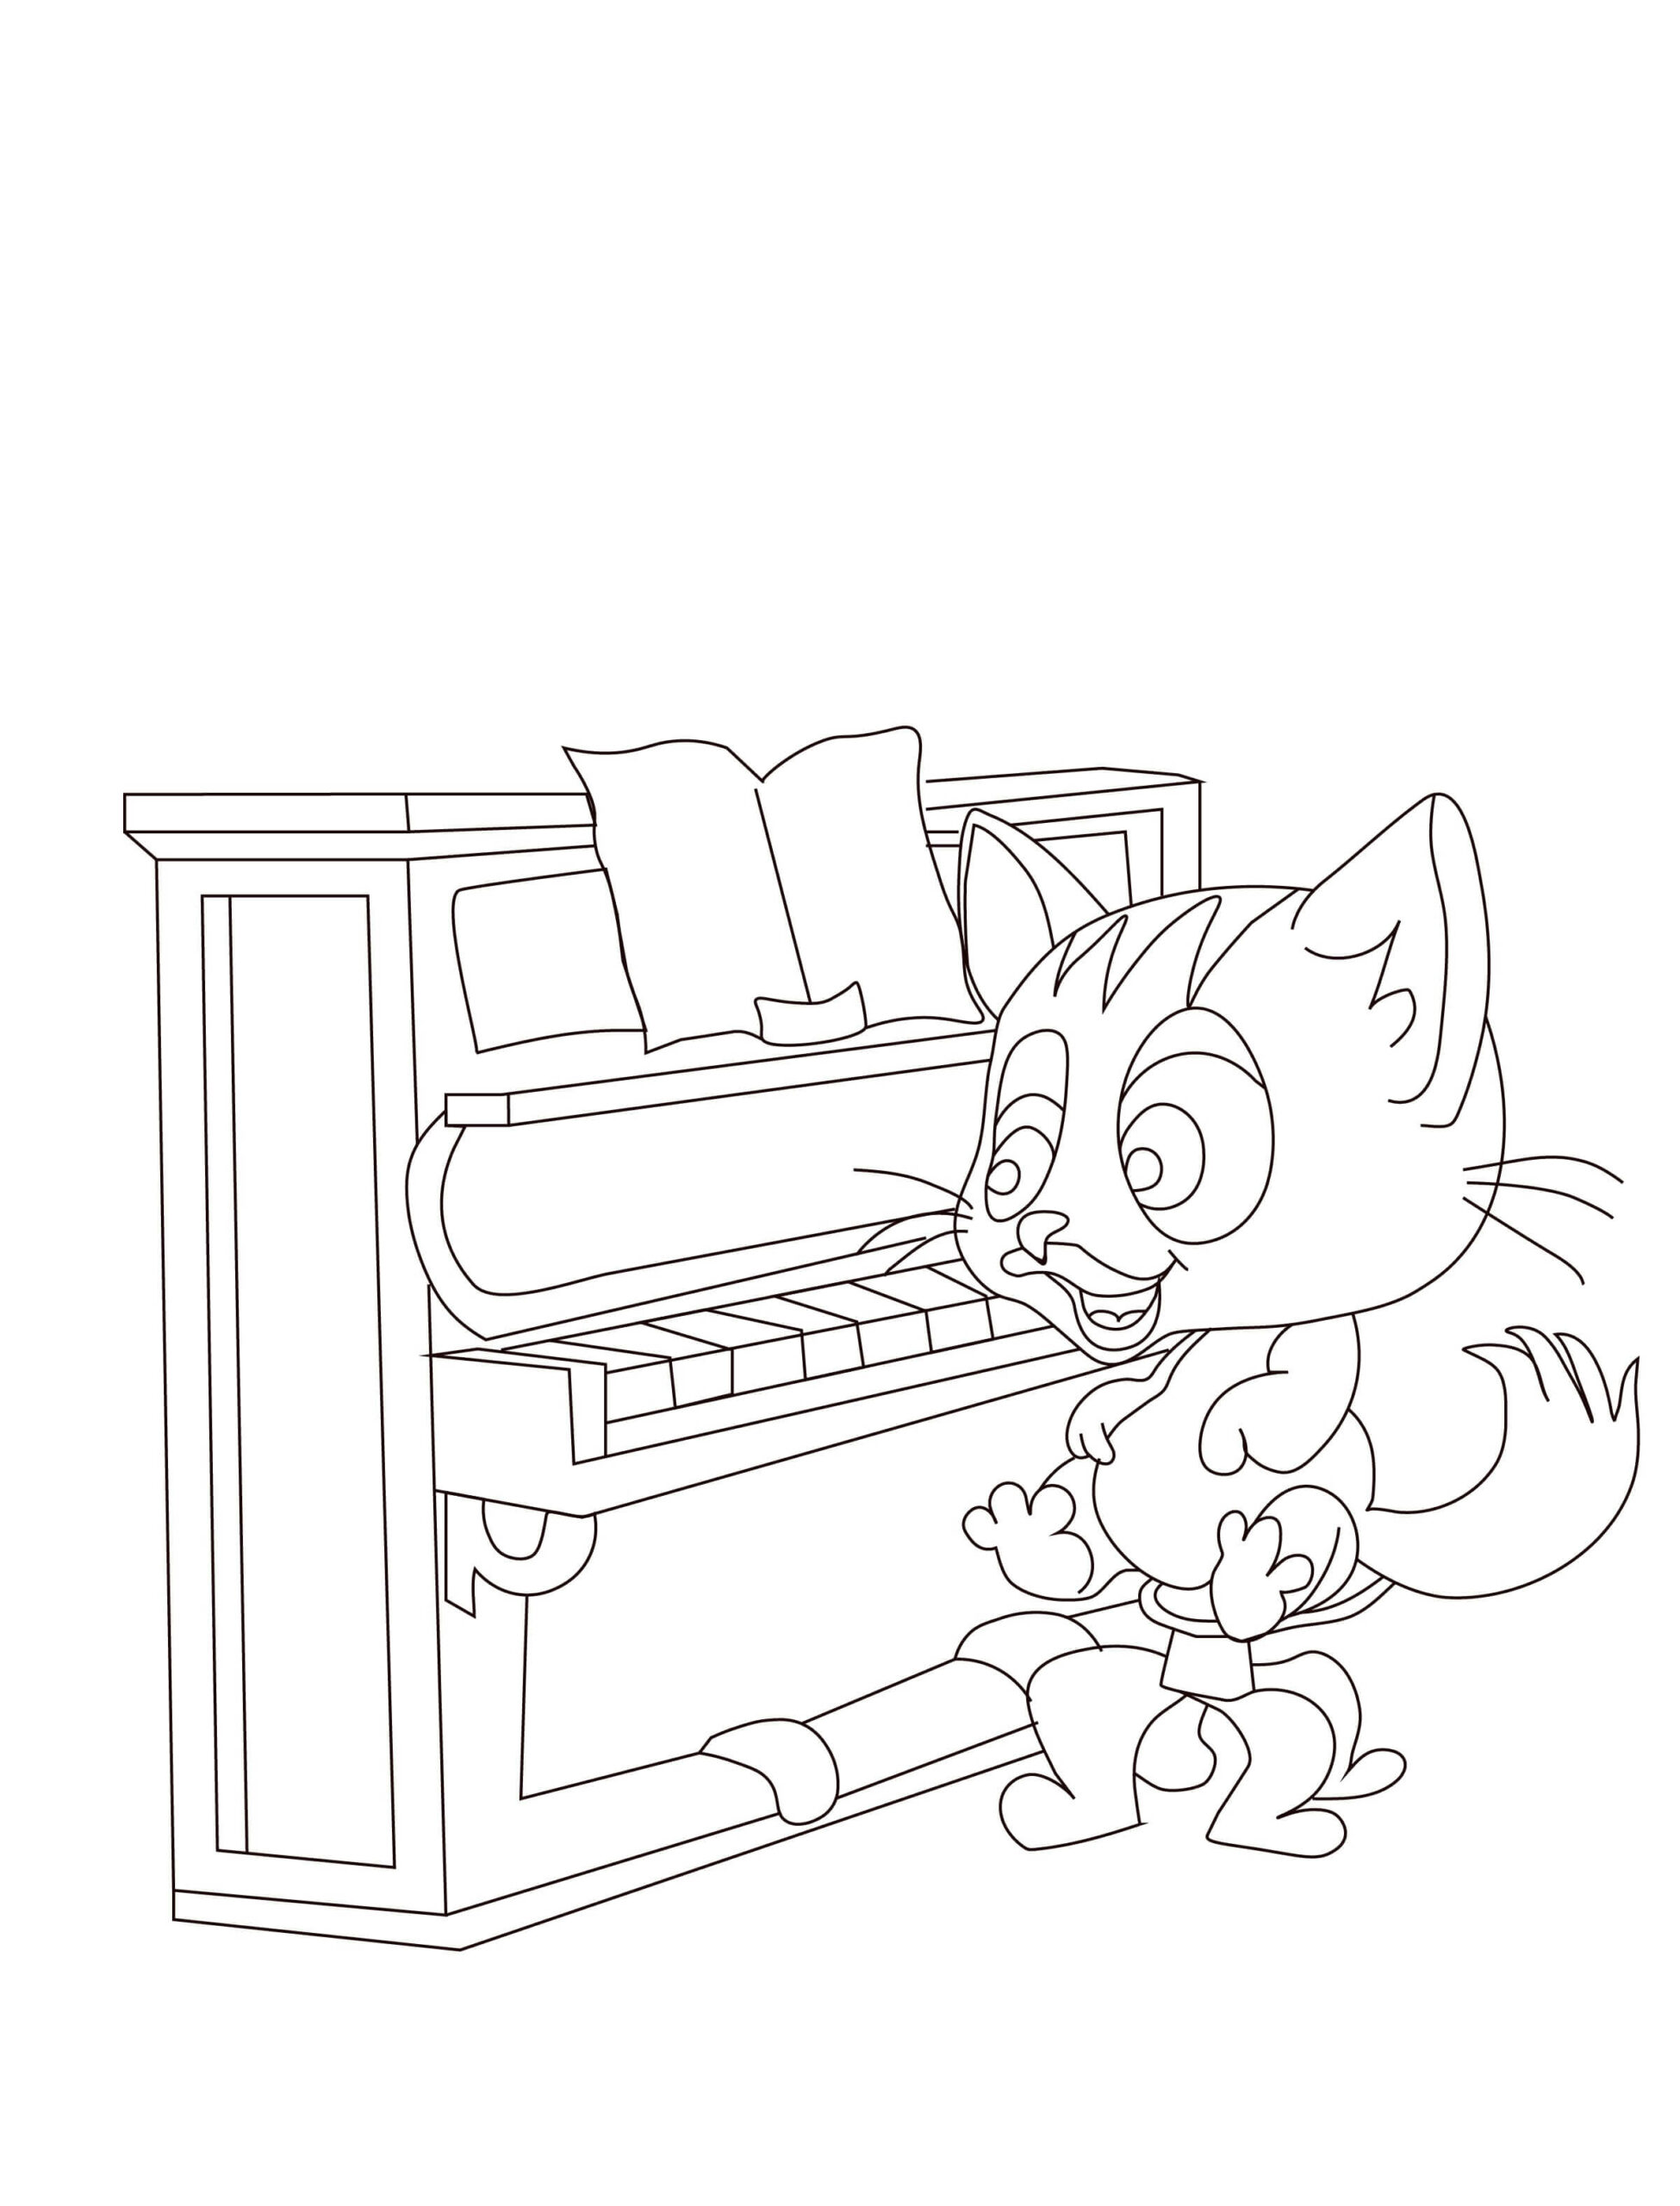 Coloriage Le Chat Joue du Piano